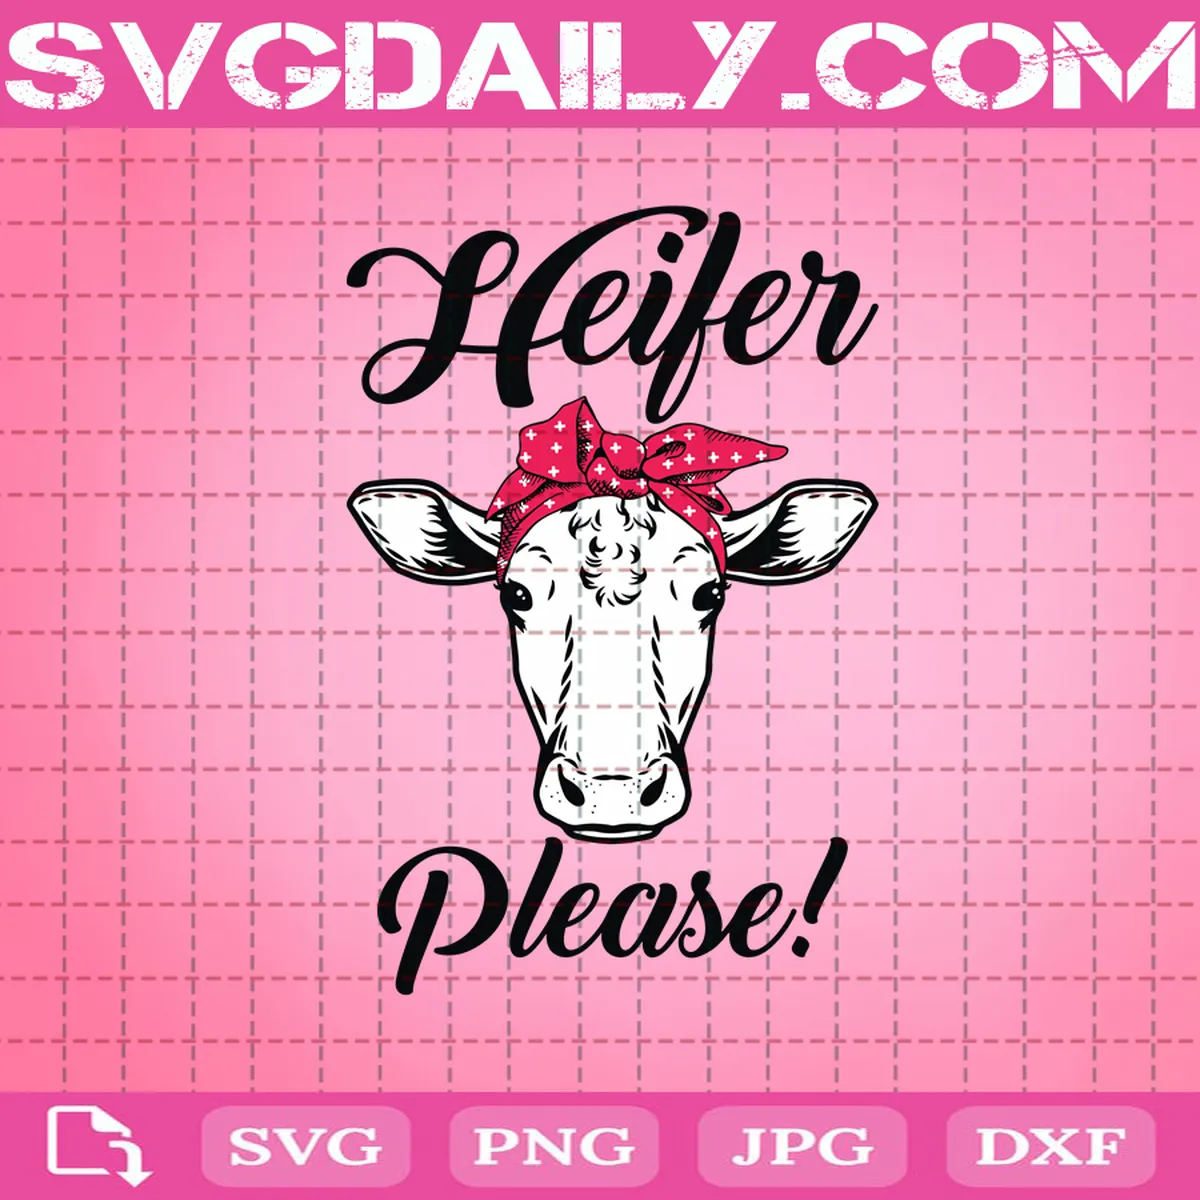 Heifer Please Svg, Cow Svg, Heifer Svg, Black Cow Svg, Funny Cow Svg, Farm Svg, Farm Girl Svg, Farmer Svg